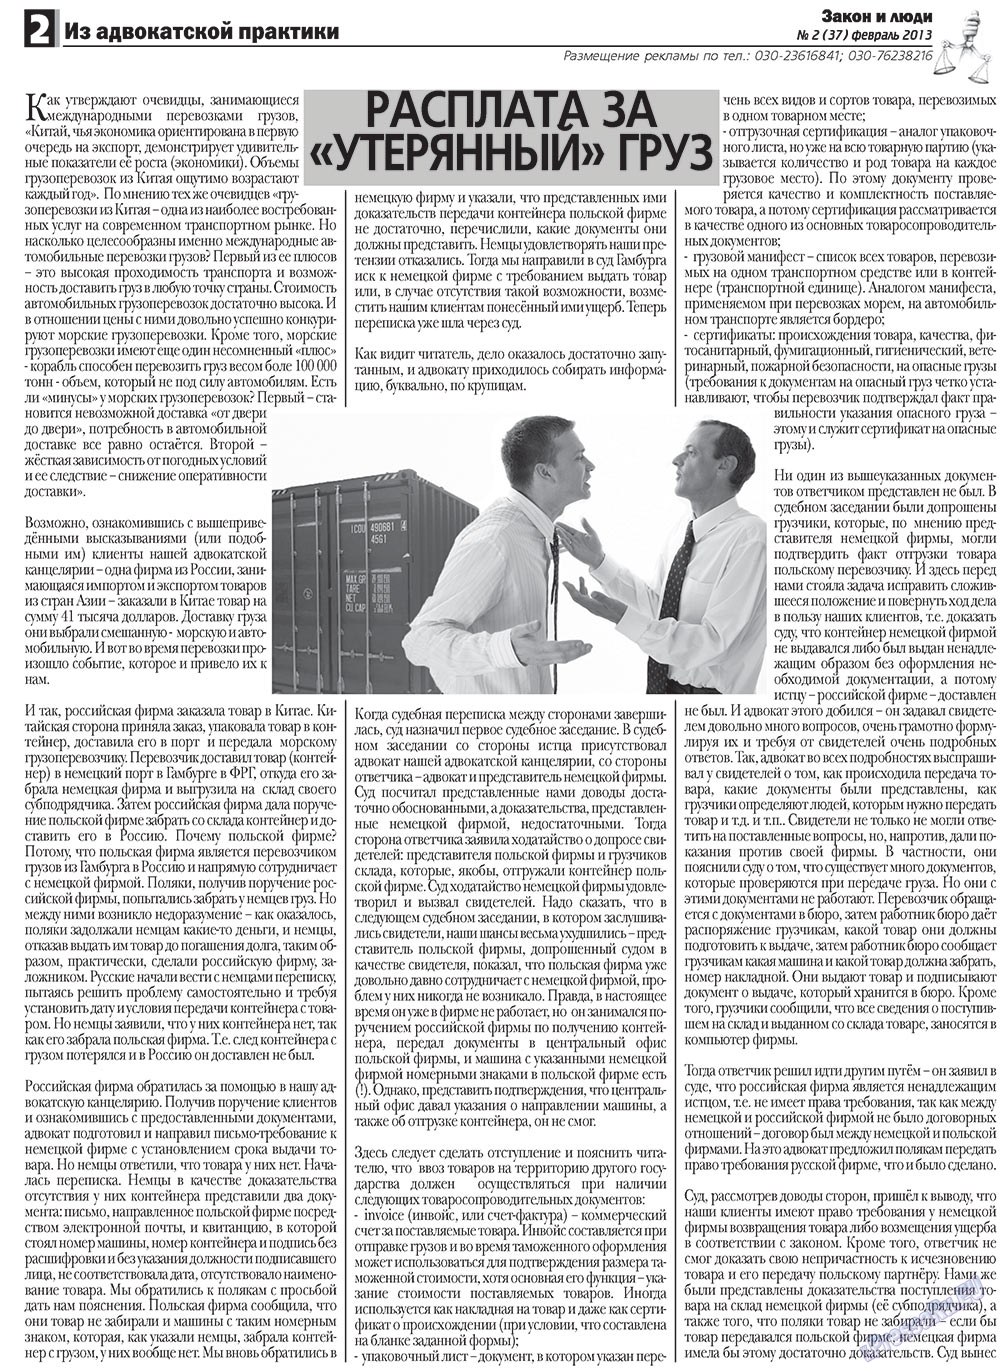 Закон и люди, газета. 2013 №2 стр.2